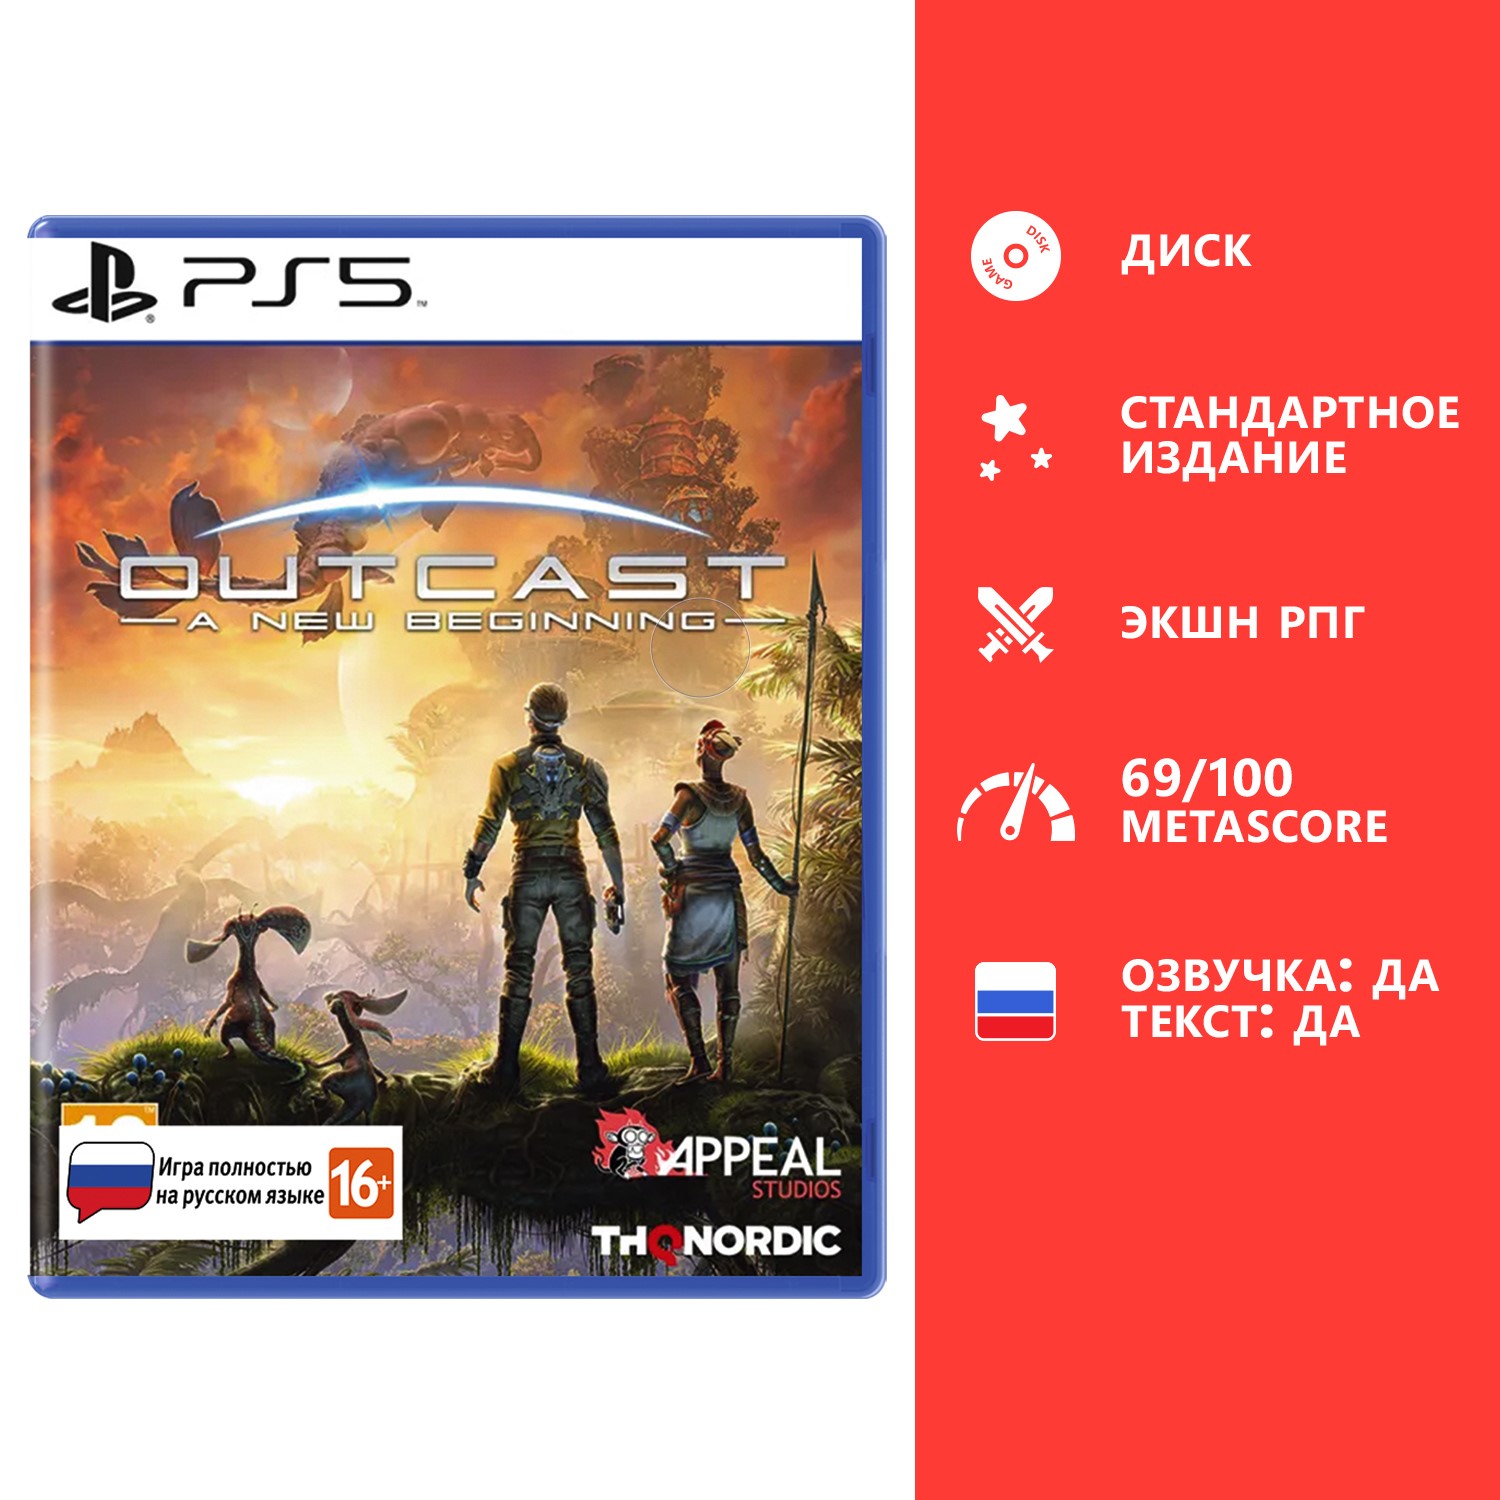 Игра Outcast: A New Beginning Стандартное издание (PS5, полностью на русском языке)